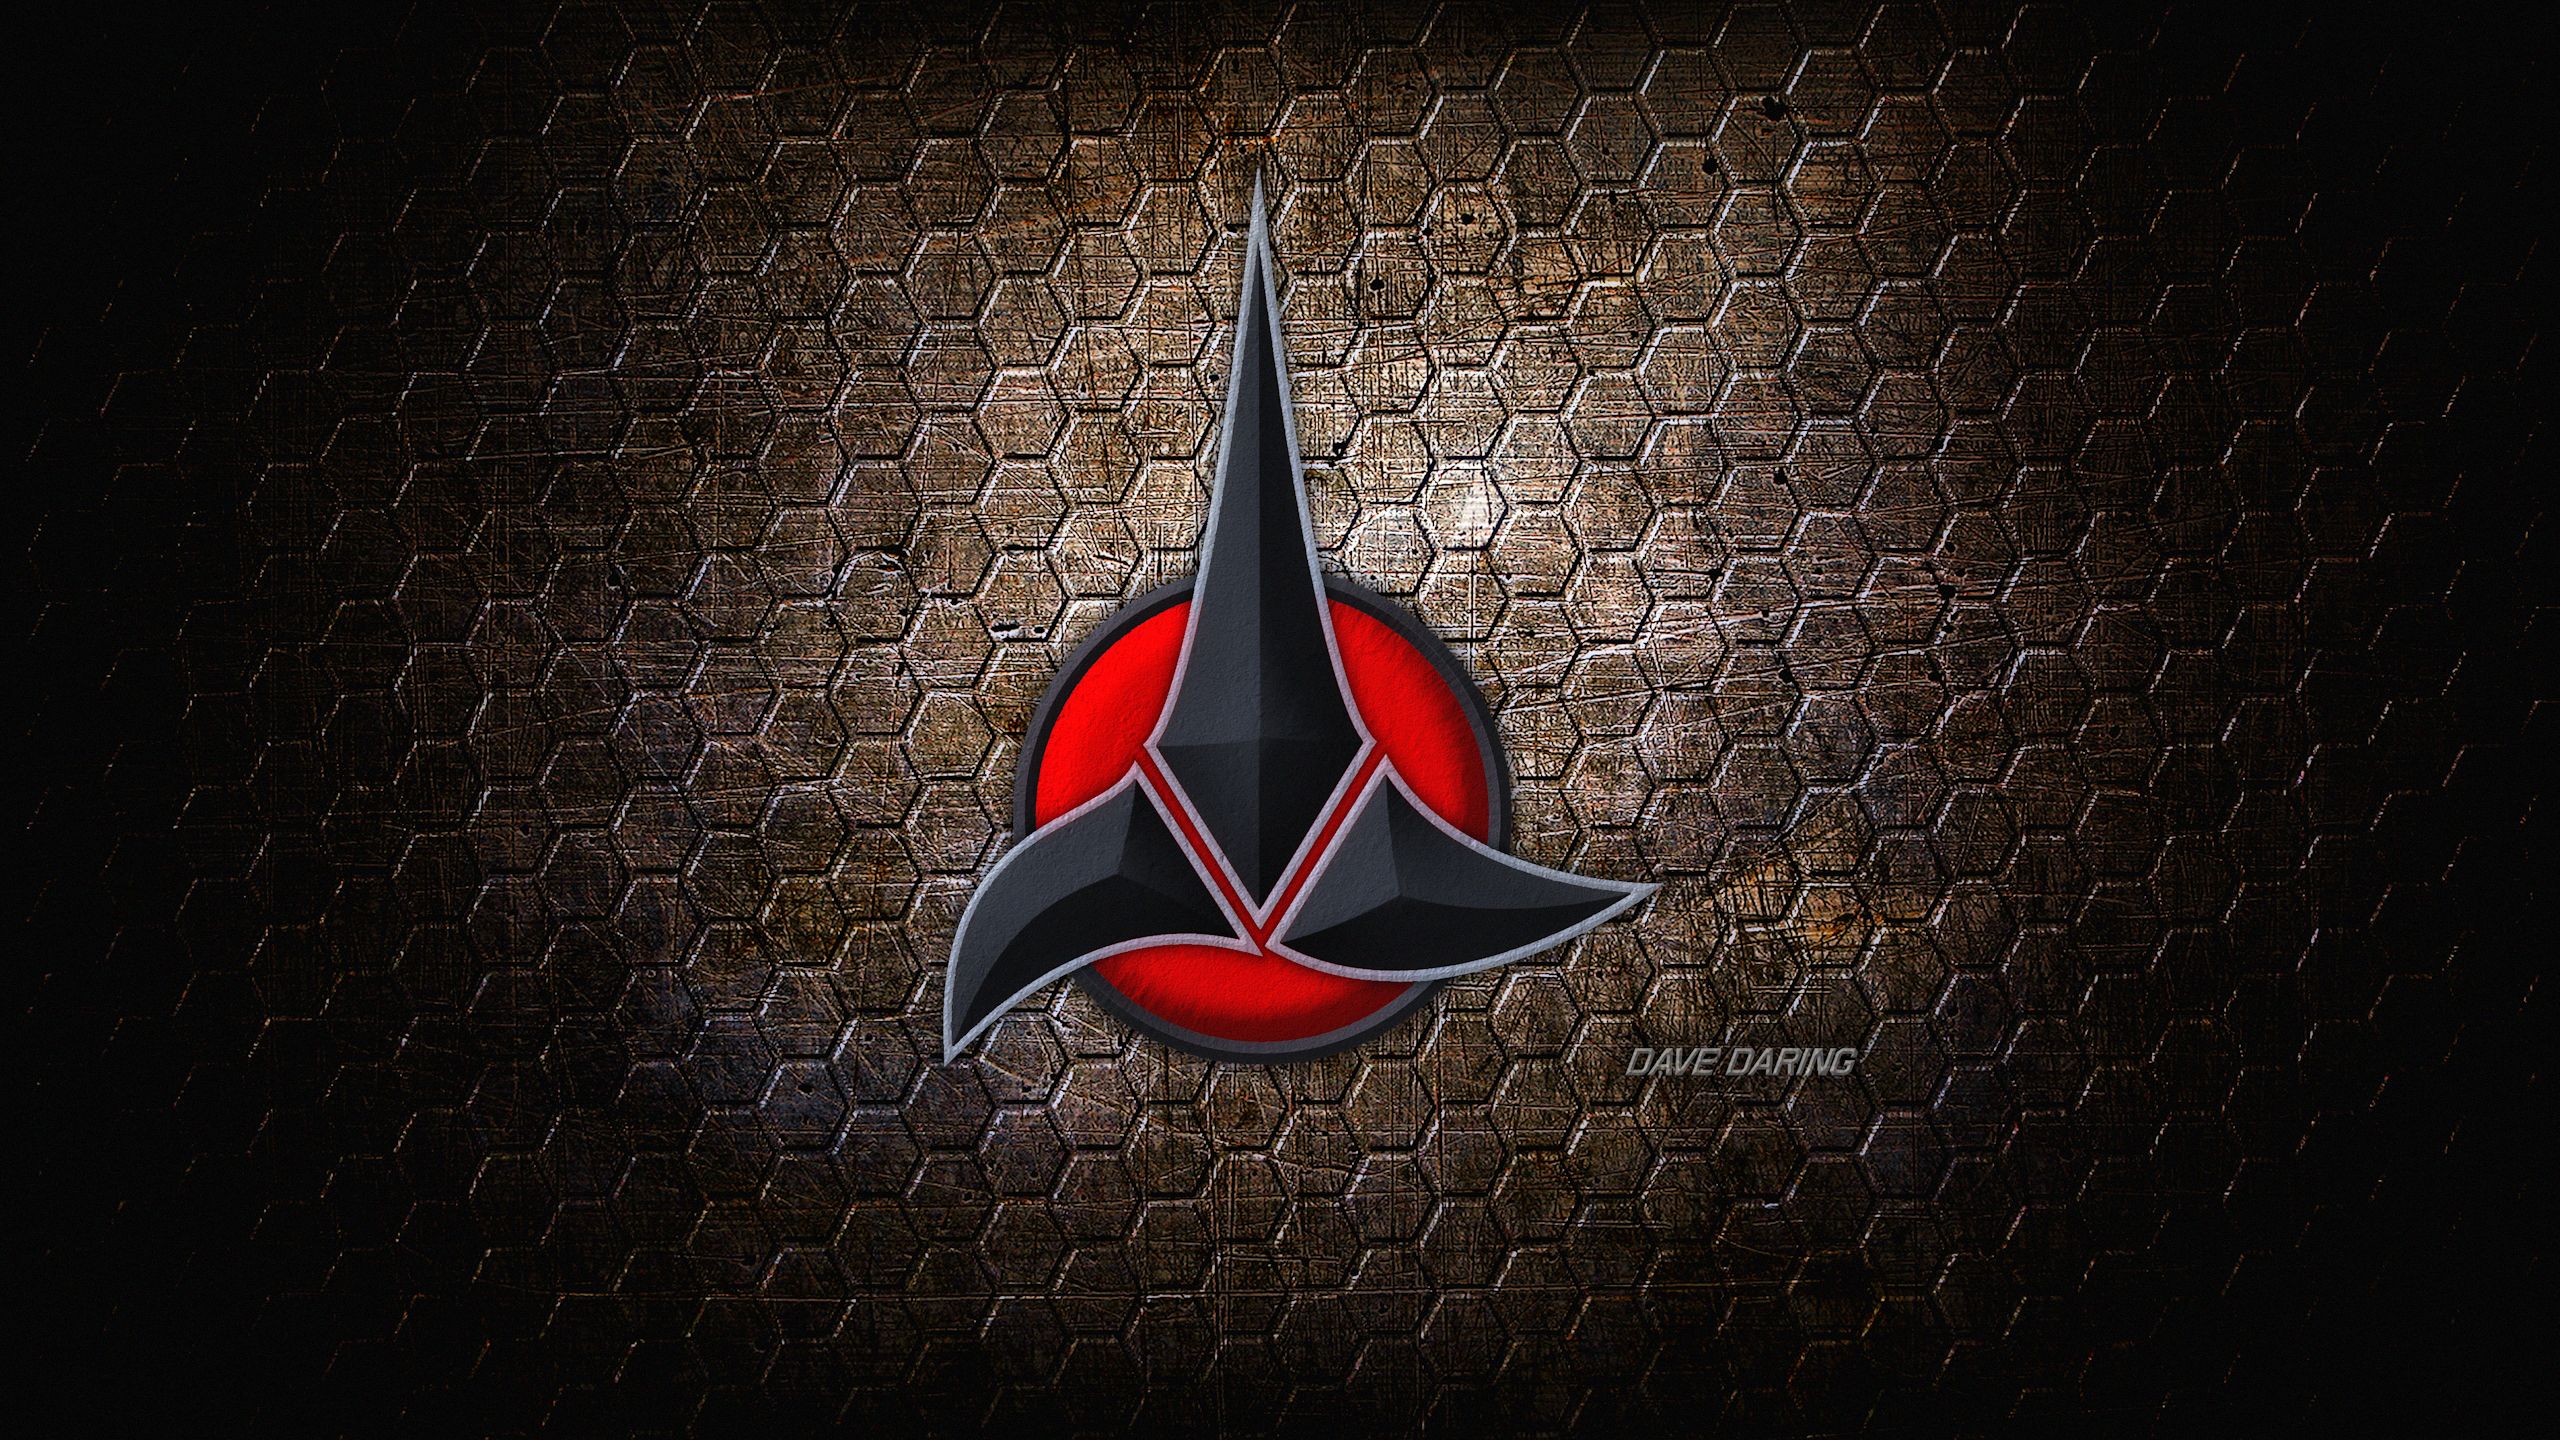 Klingon Logo Wallpaper Klingon Logo Wallpaper Klingon 2560x1440